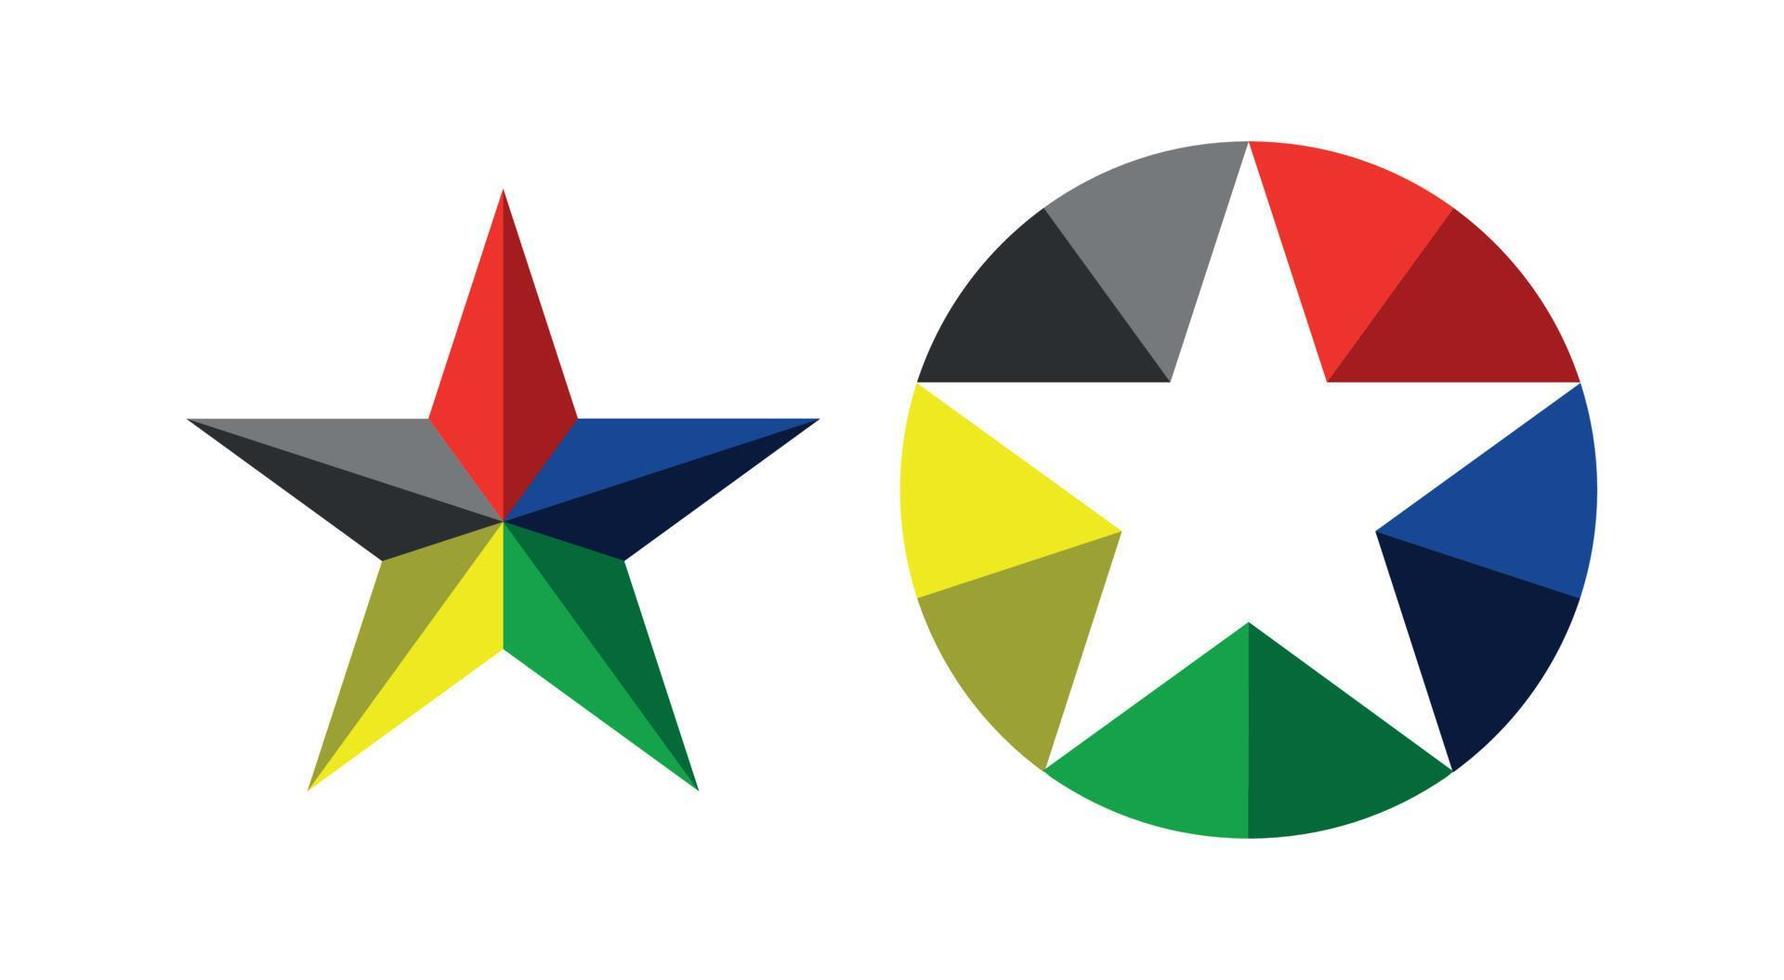 stjärna symbol med röd, grön, gul, grå vektor